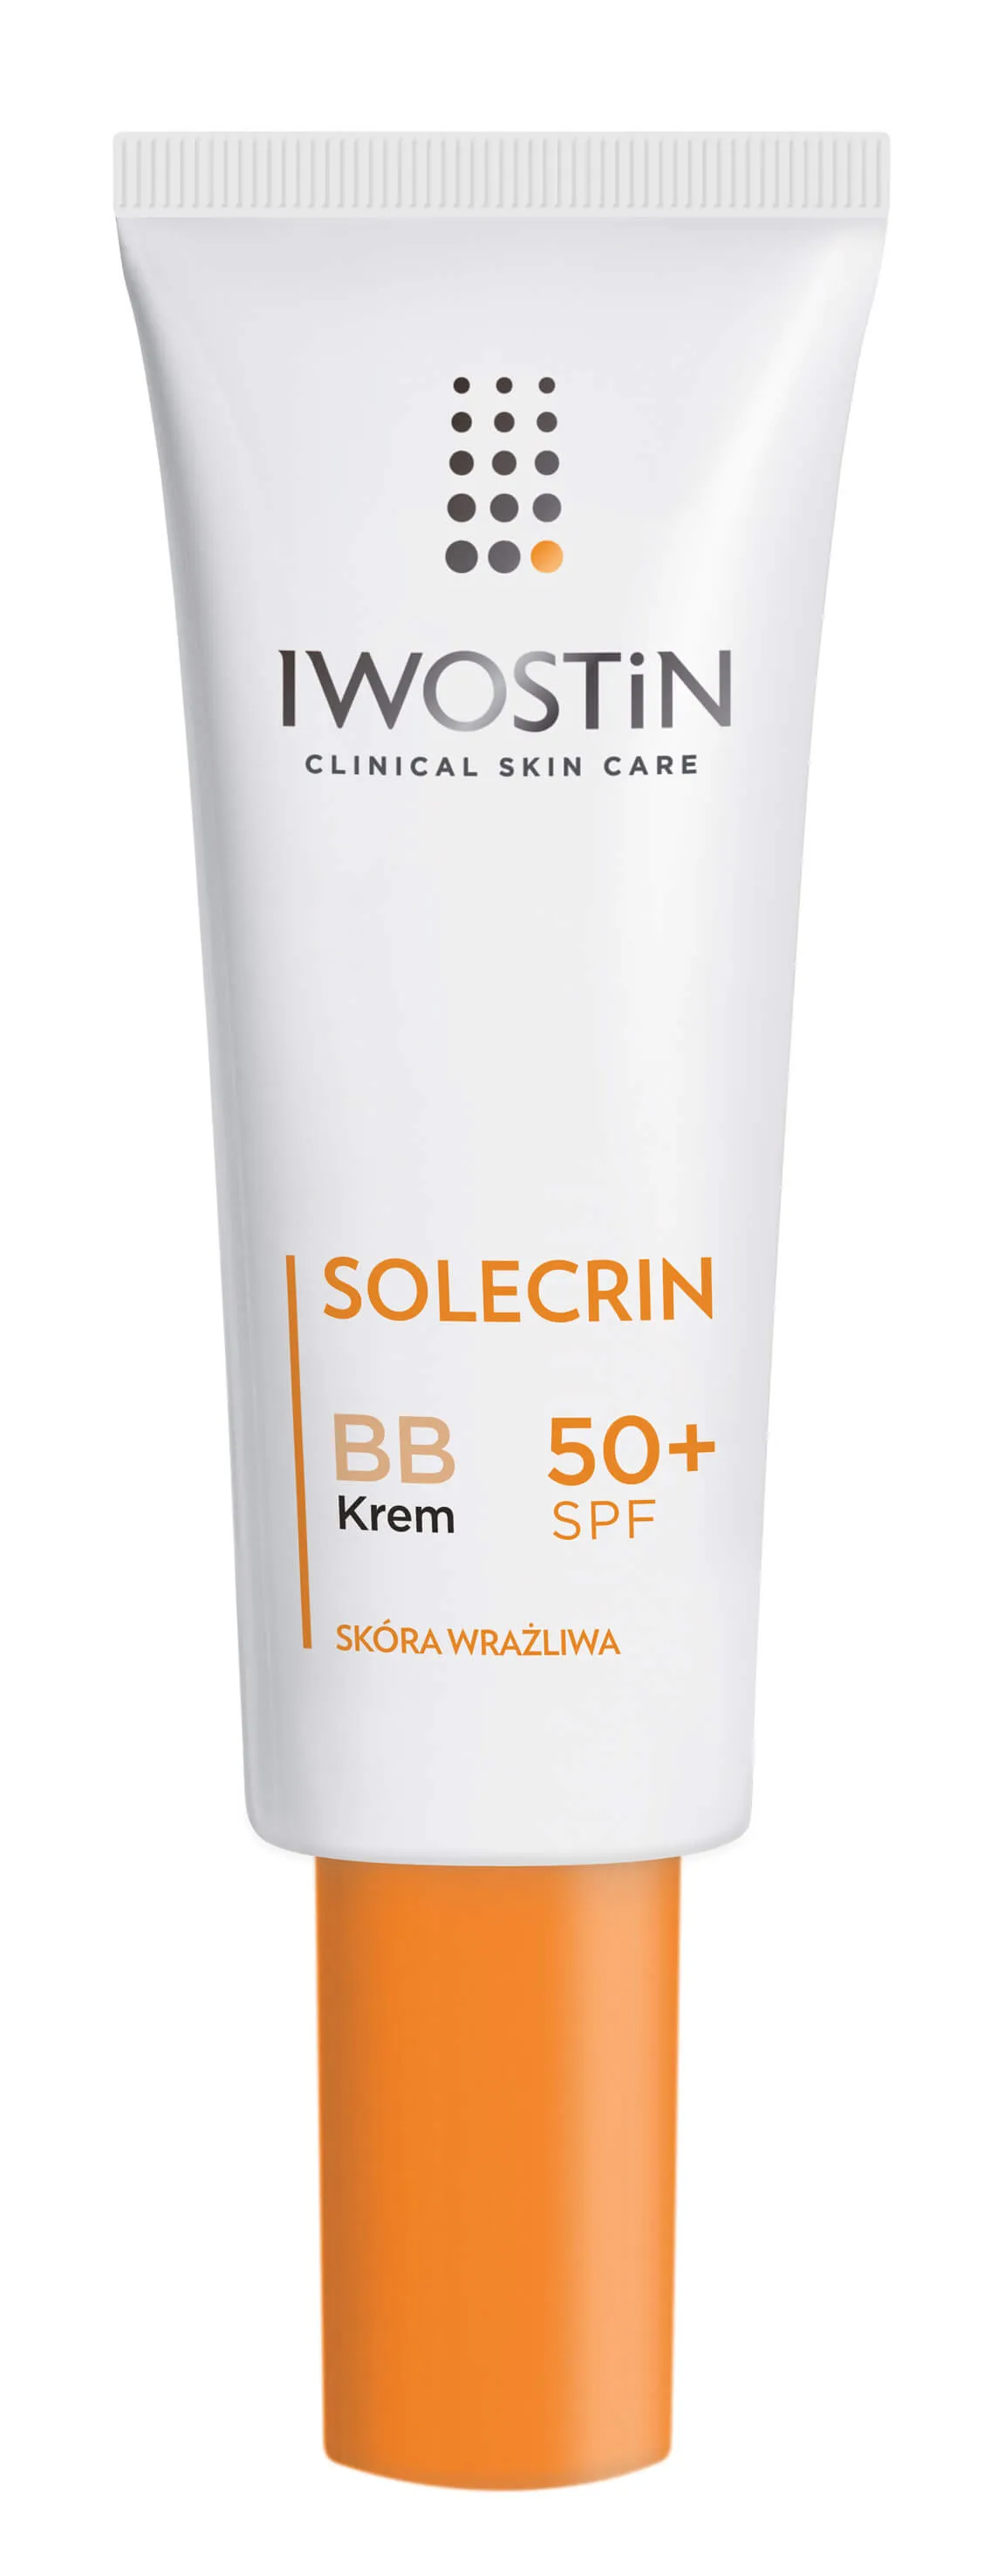 Iwostin Solecrin BB, krem SPF 50+, 30 ml